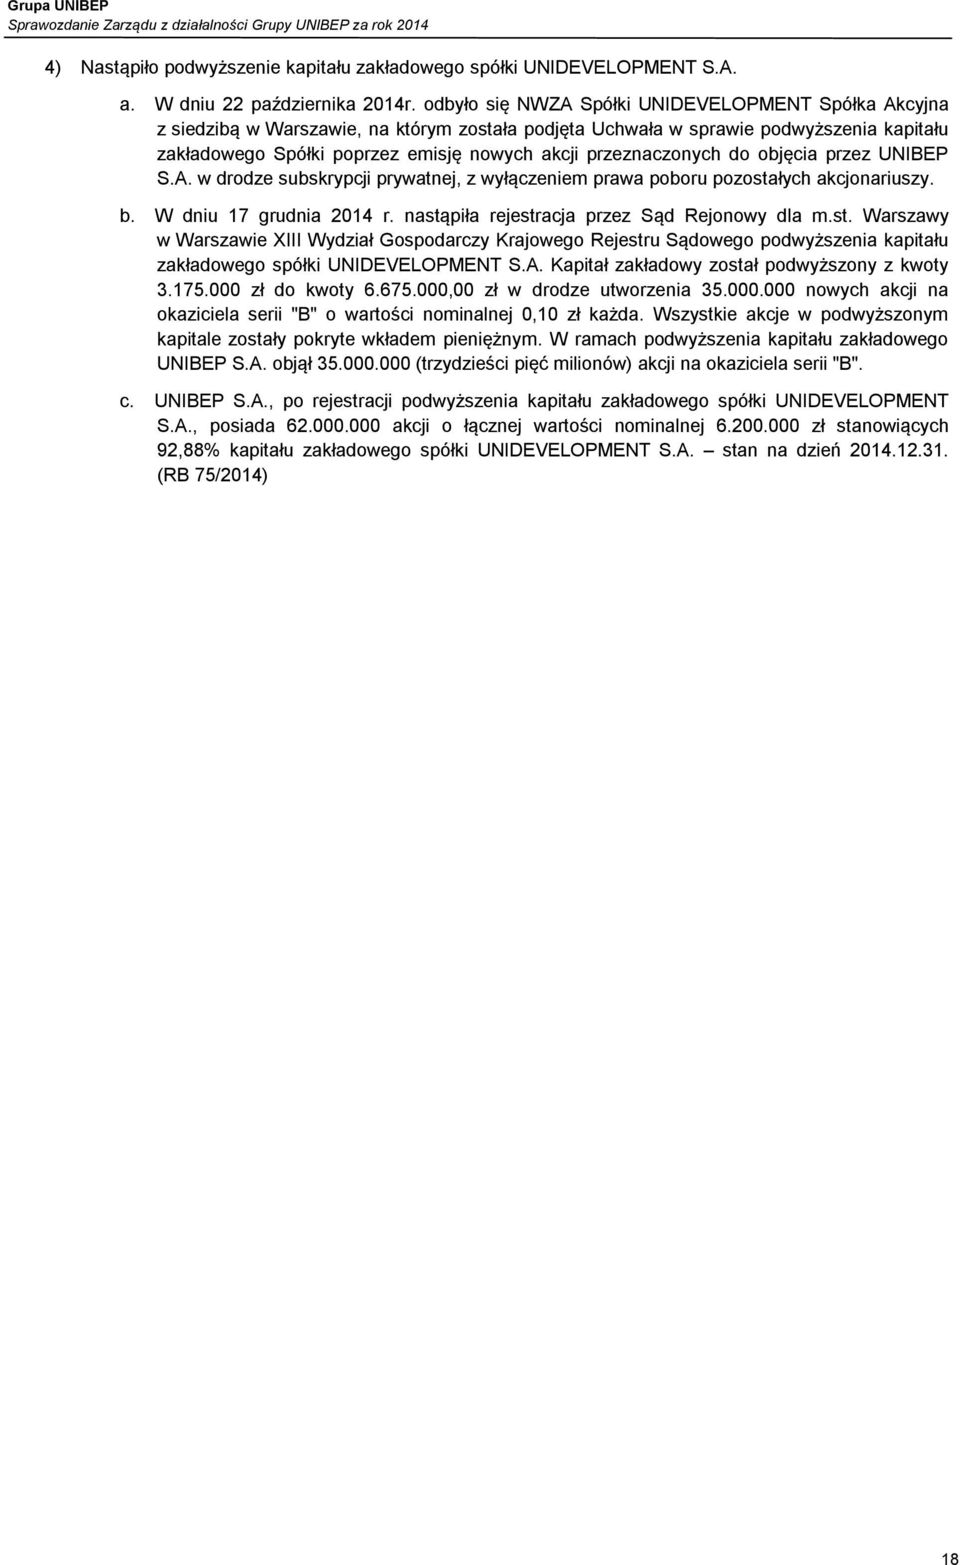 przeznaczonych do objęcia przez UNIBEP S.A. w drodze subskrypcji prywatnej, z wyłączeniem prawa poboru pozostałych akcjonariuszy. b. W dniu 17 grudnia 2014 r.